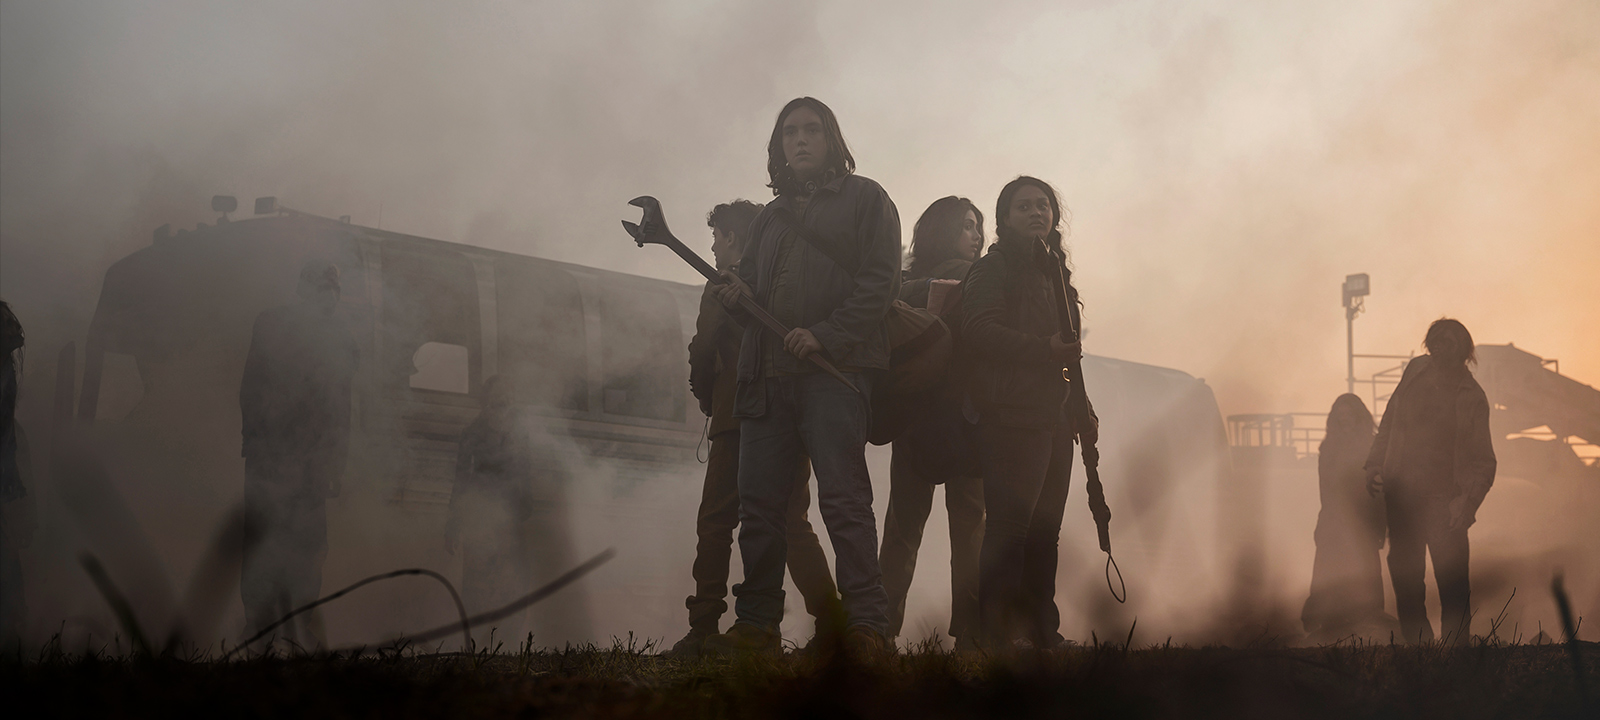 Nova derivada de The Walking Dead vai explicar apocalipse? Vai ter Rick? Veja 7 teorias - 5